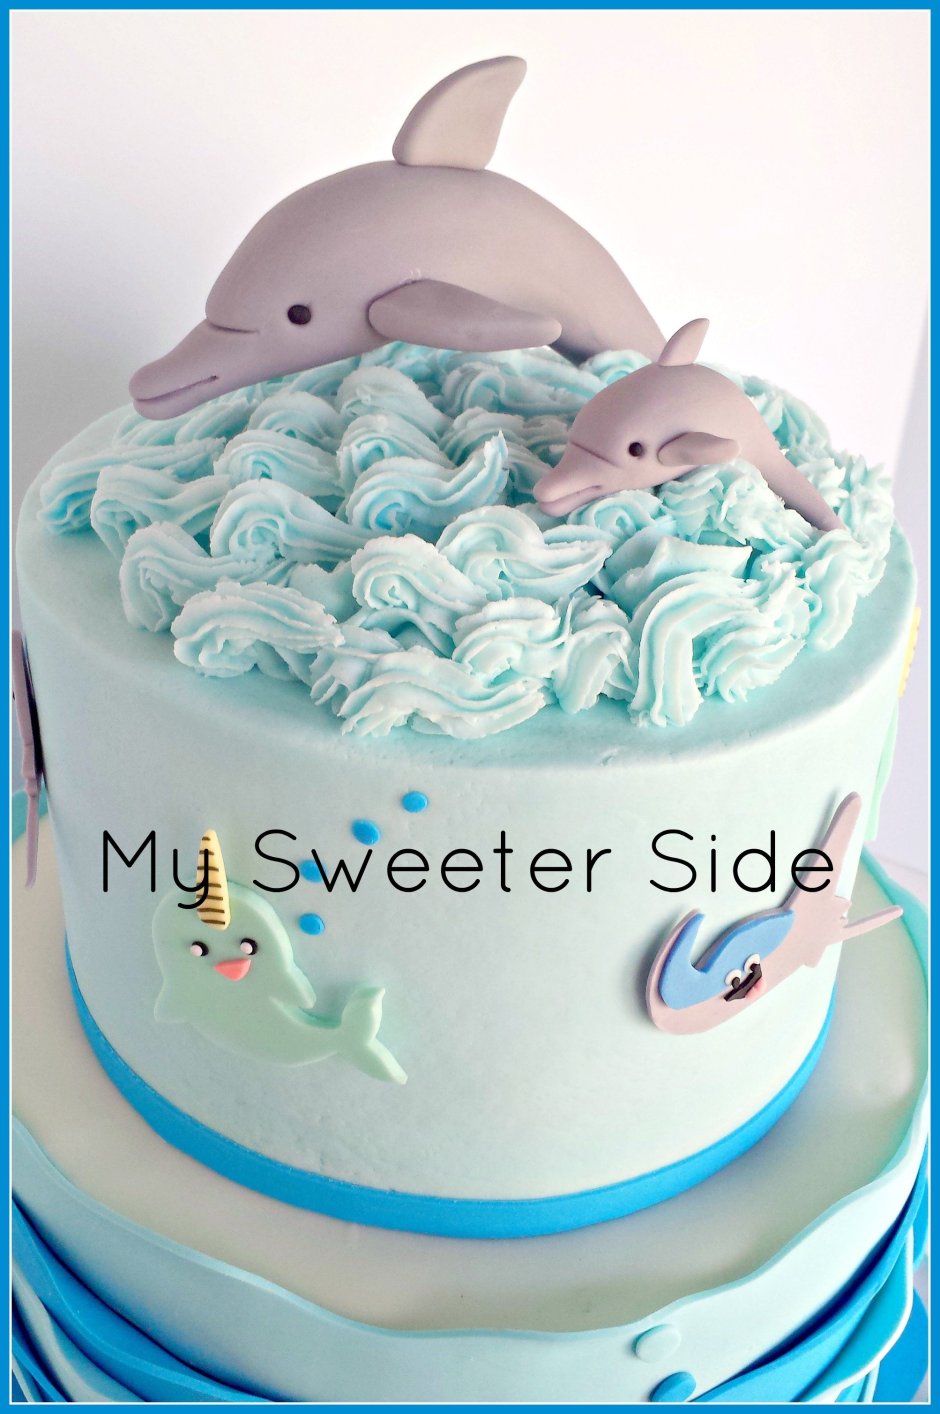 Украшения торта с дельфинами